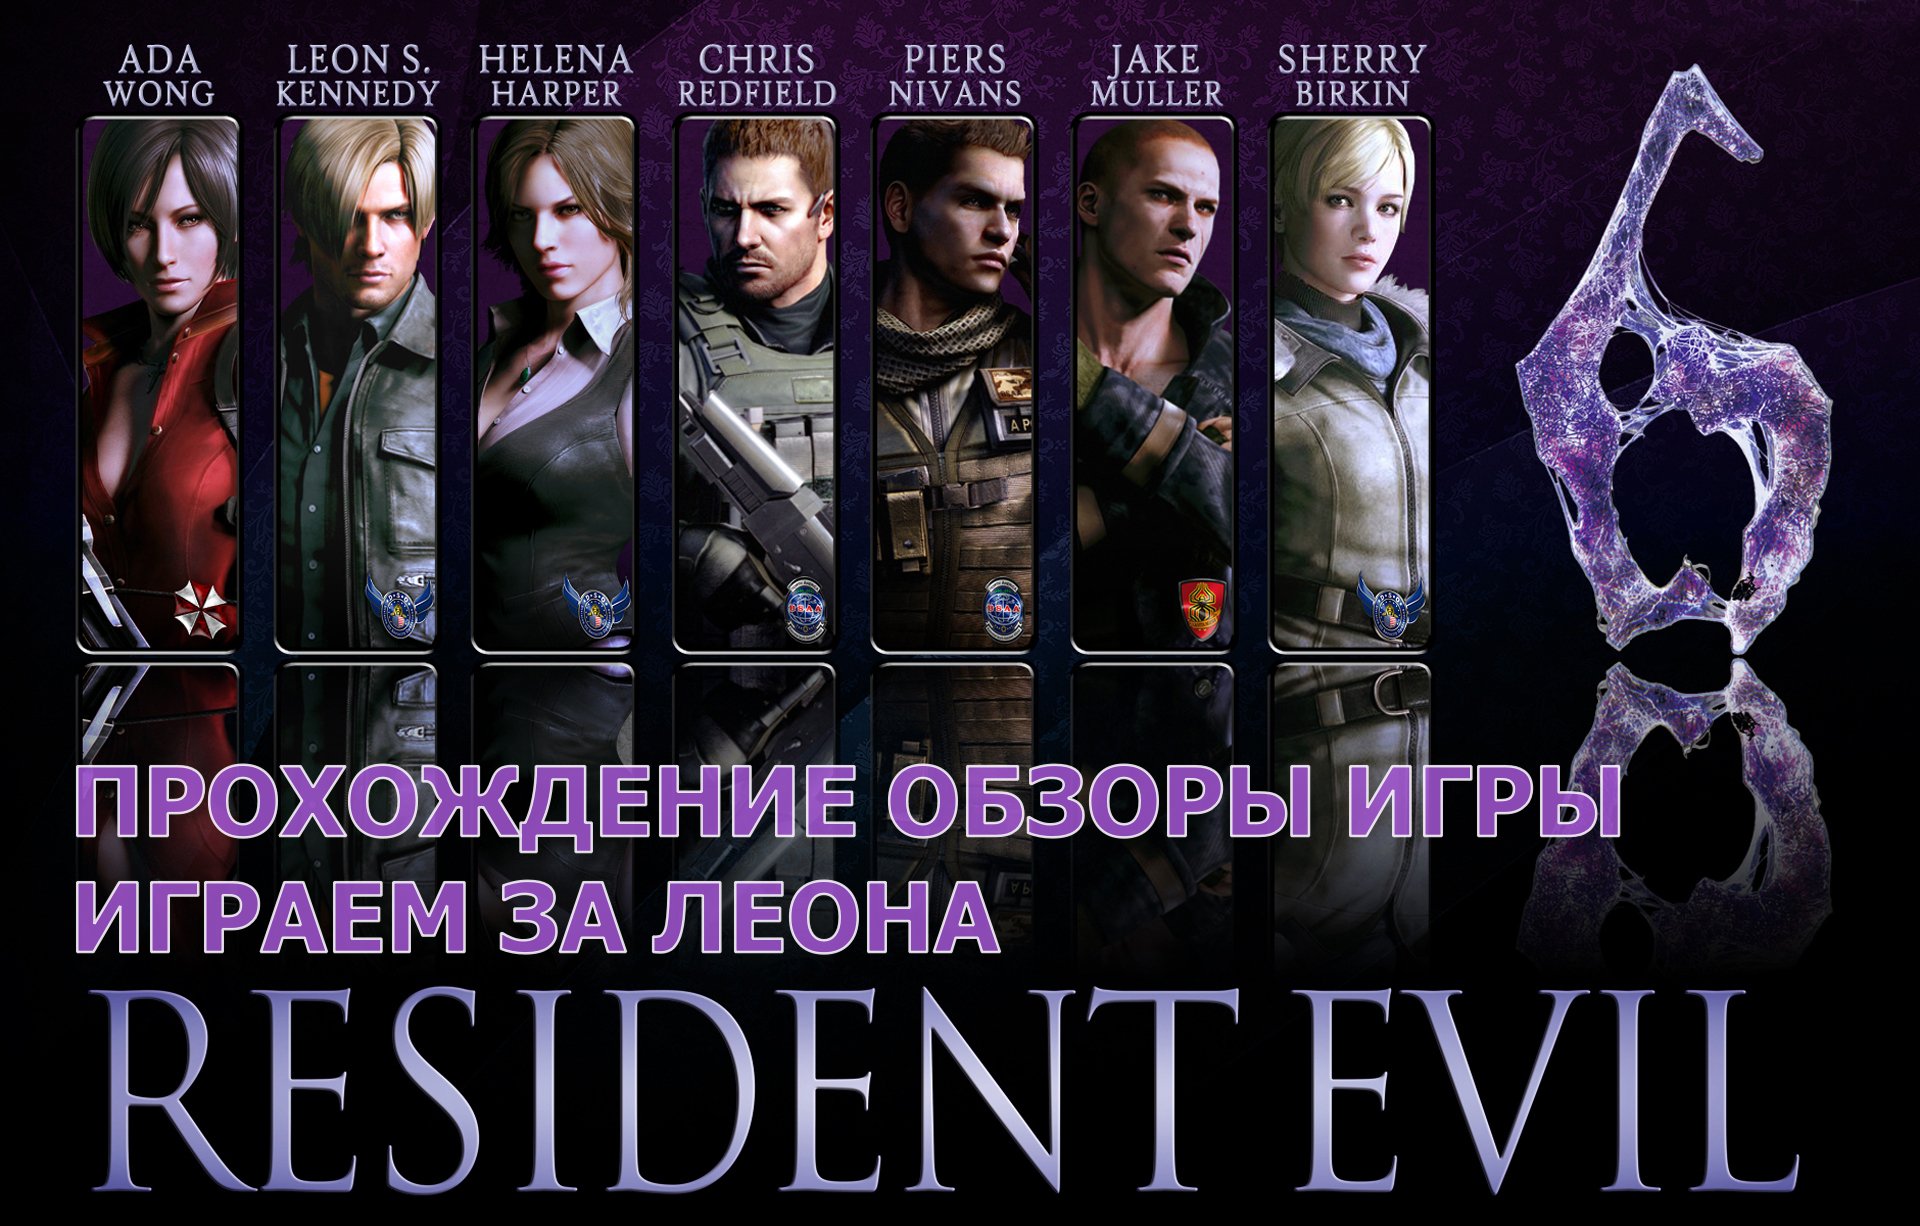 Прохождение обзоры игры - Resident Evil 6 за Леона играем # 9. PC - HD Full 1080p.